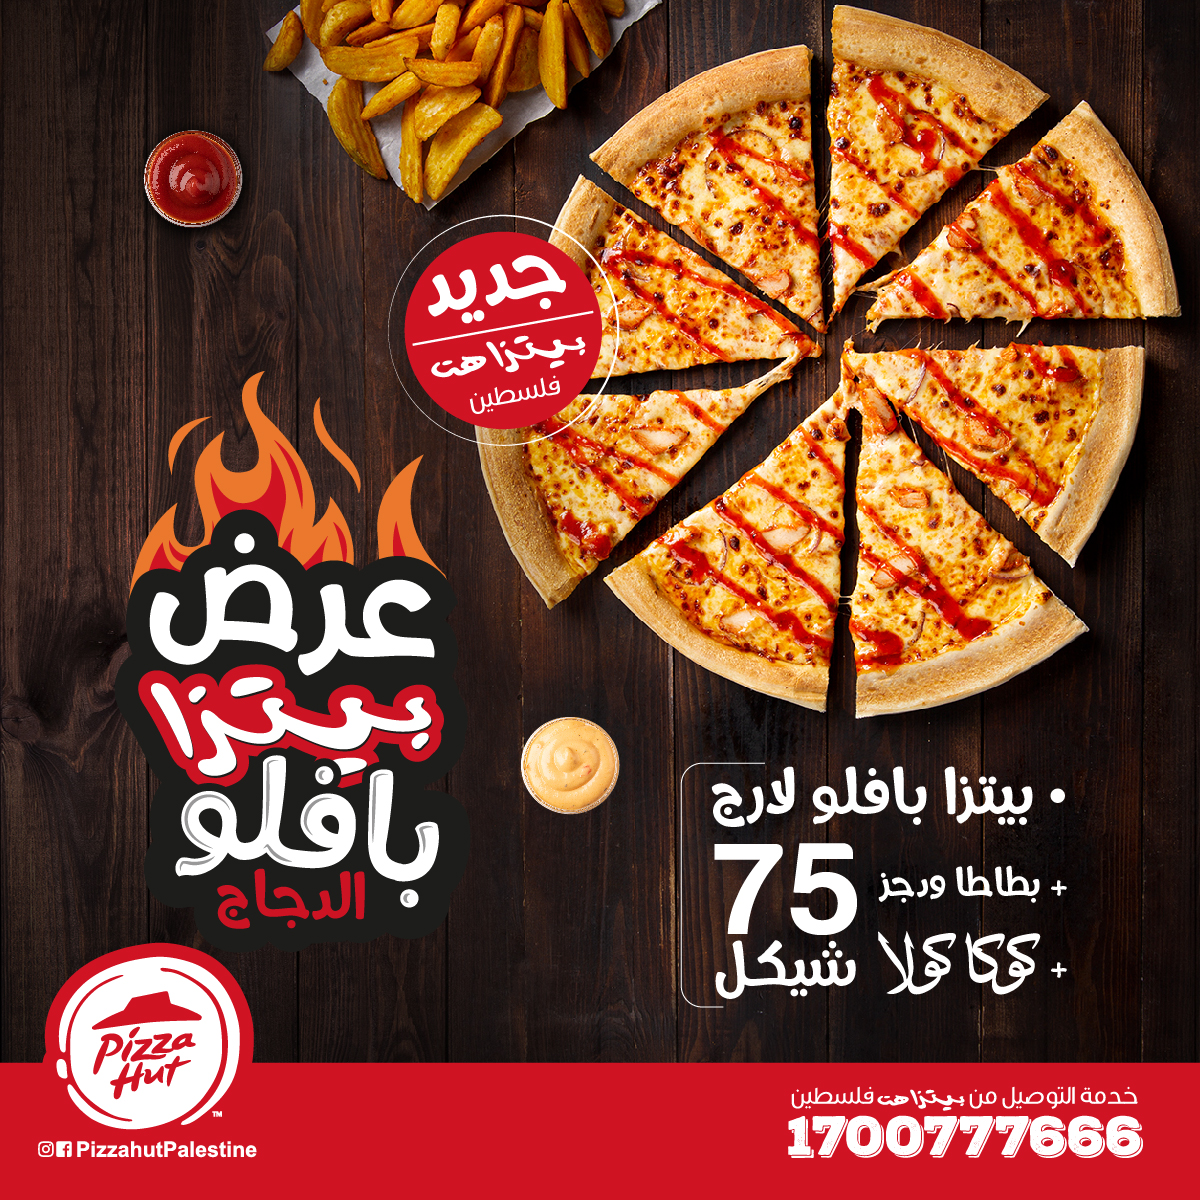 بيتزا بافلو الدجاج لارج+ بطاطا ويدجز + مشروب عائلي بسعر 75 شيكل فقط